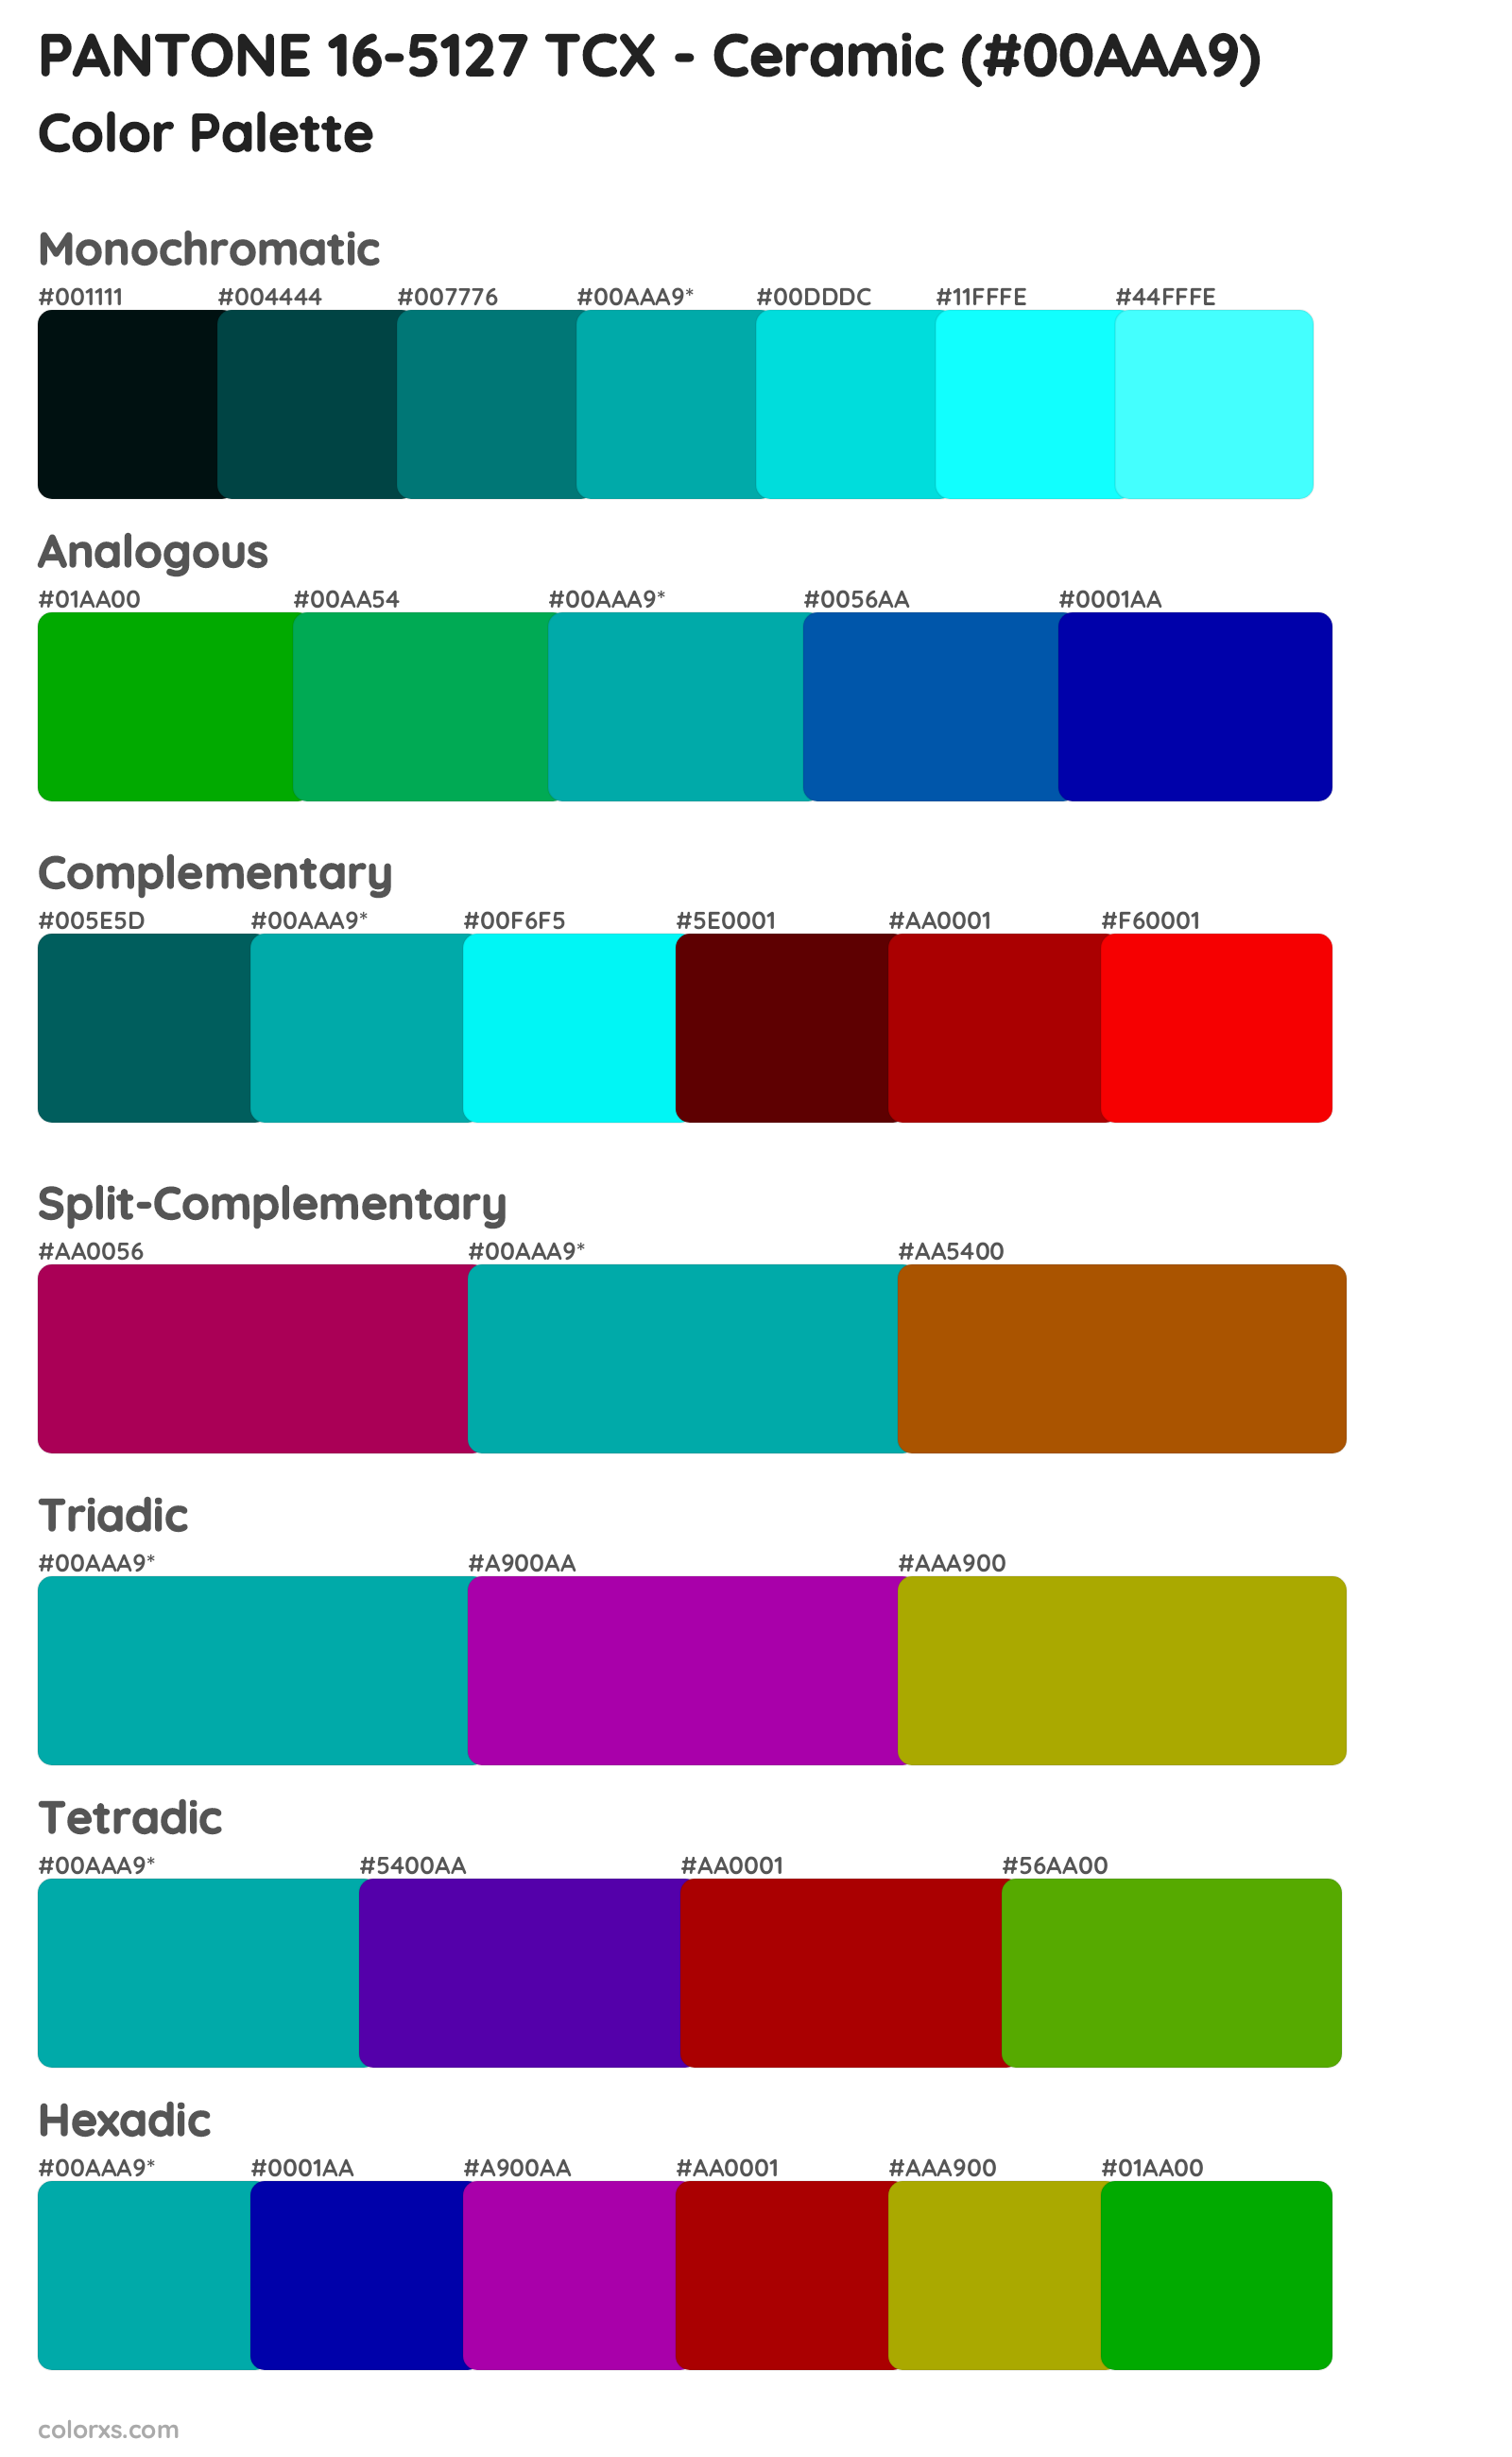 PANTONE 16-5127 TCX - Ceramic Color Scheme Palettes